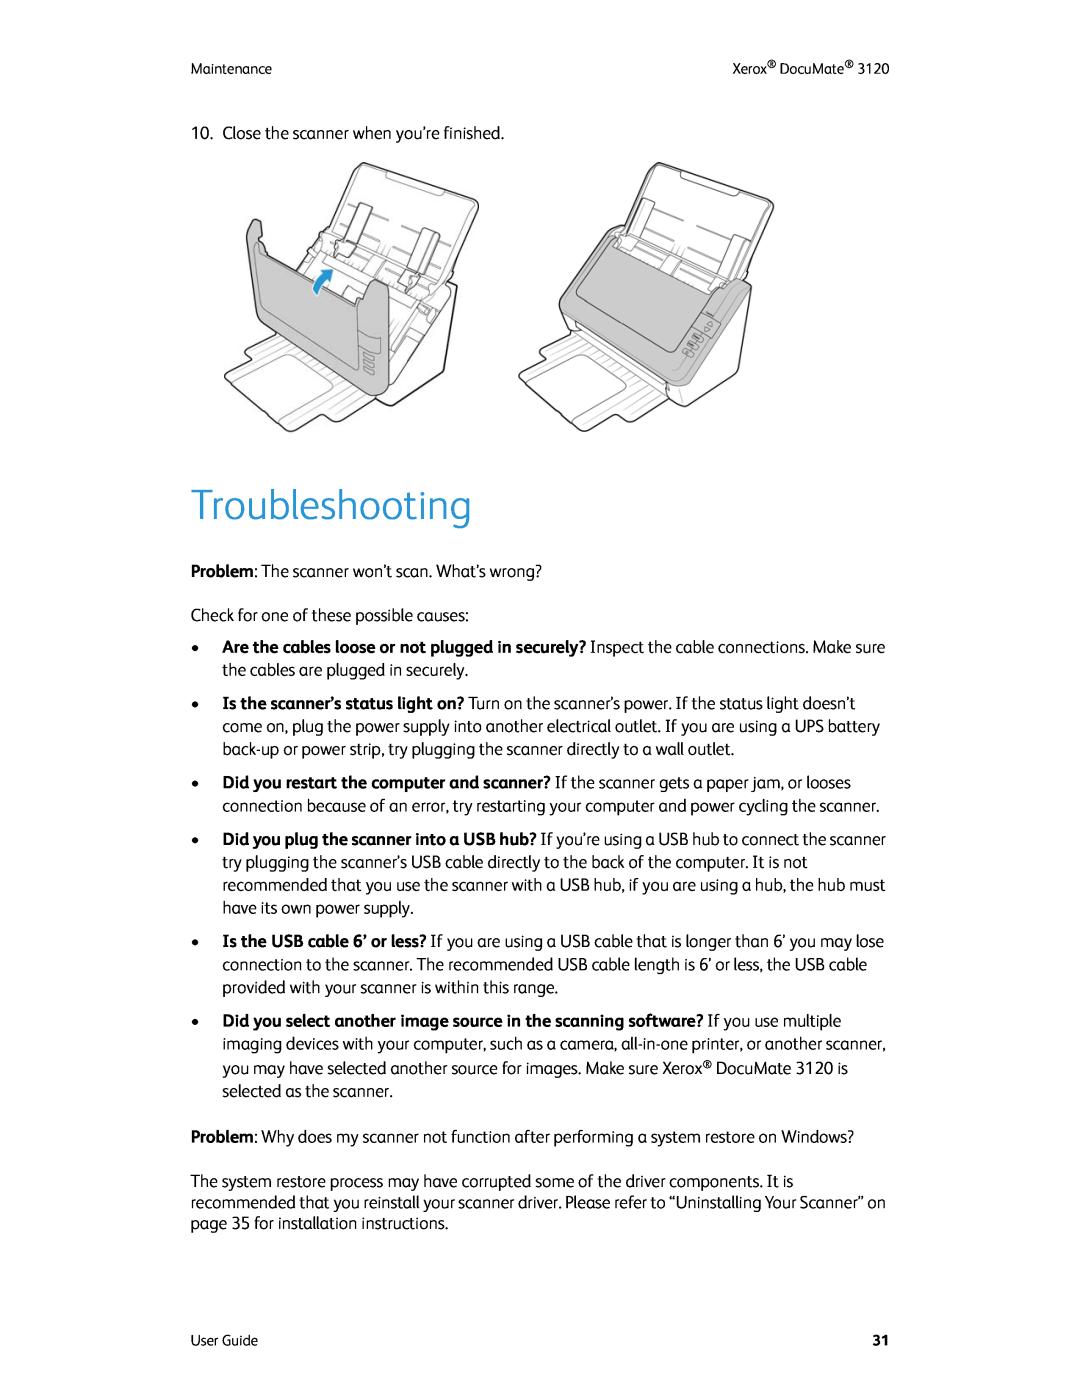 Xerox xerox manual Troubleshooting 